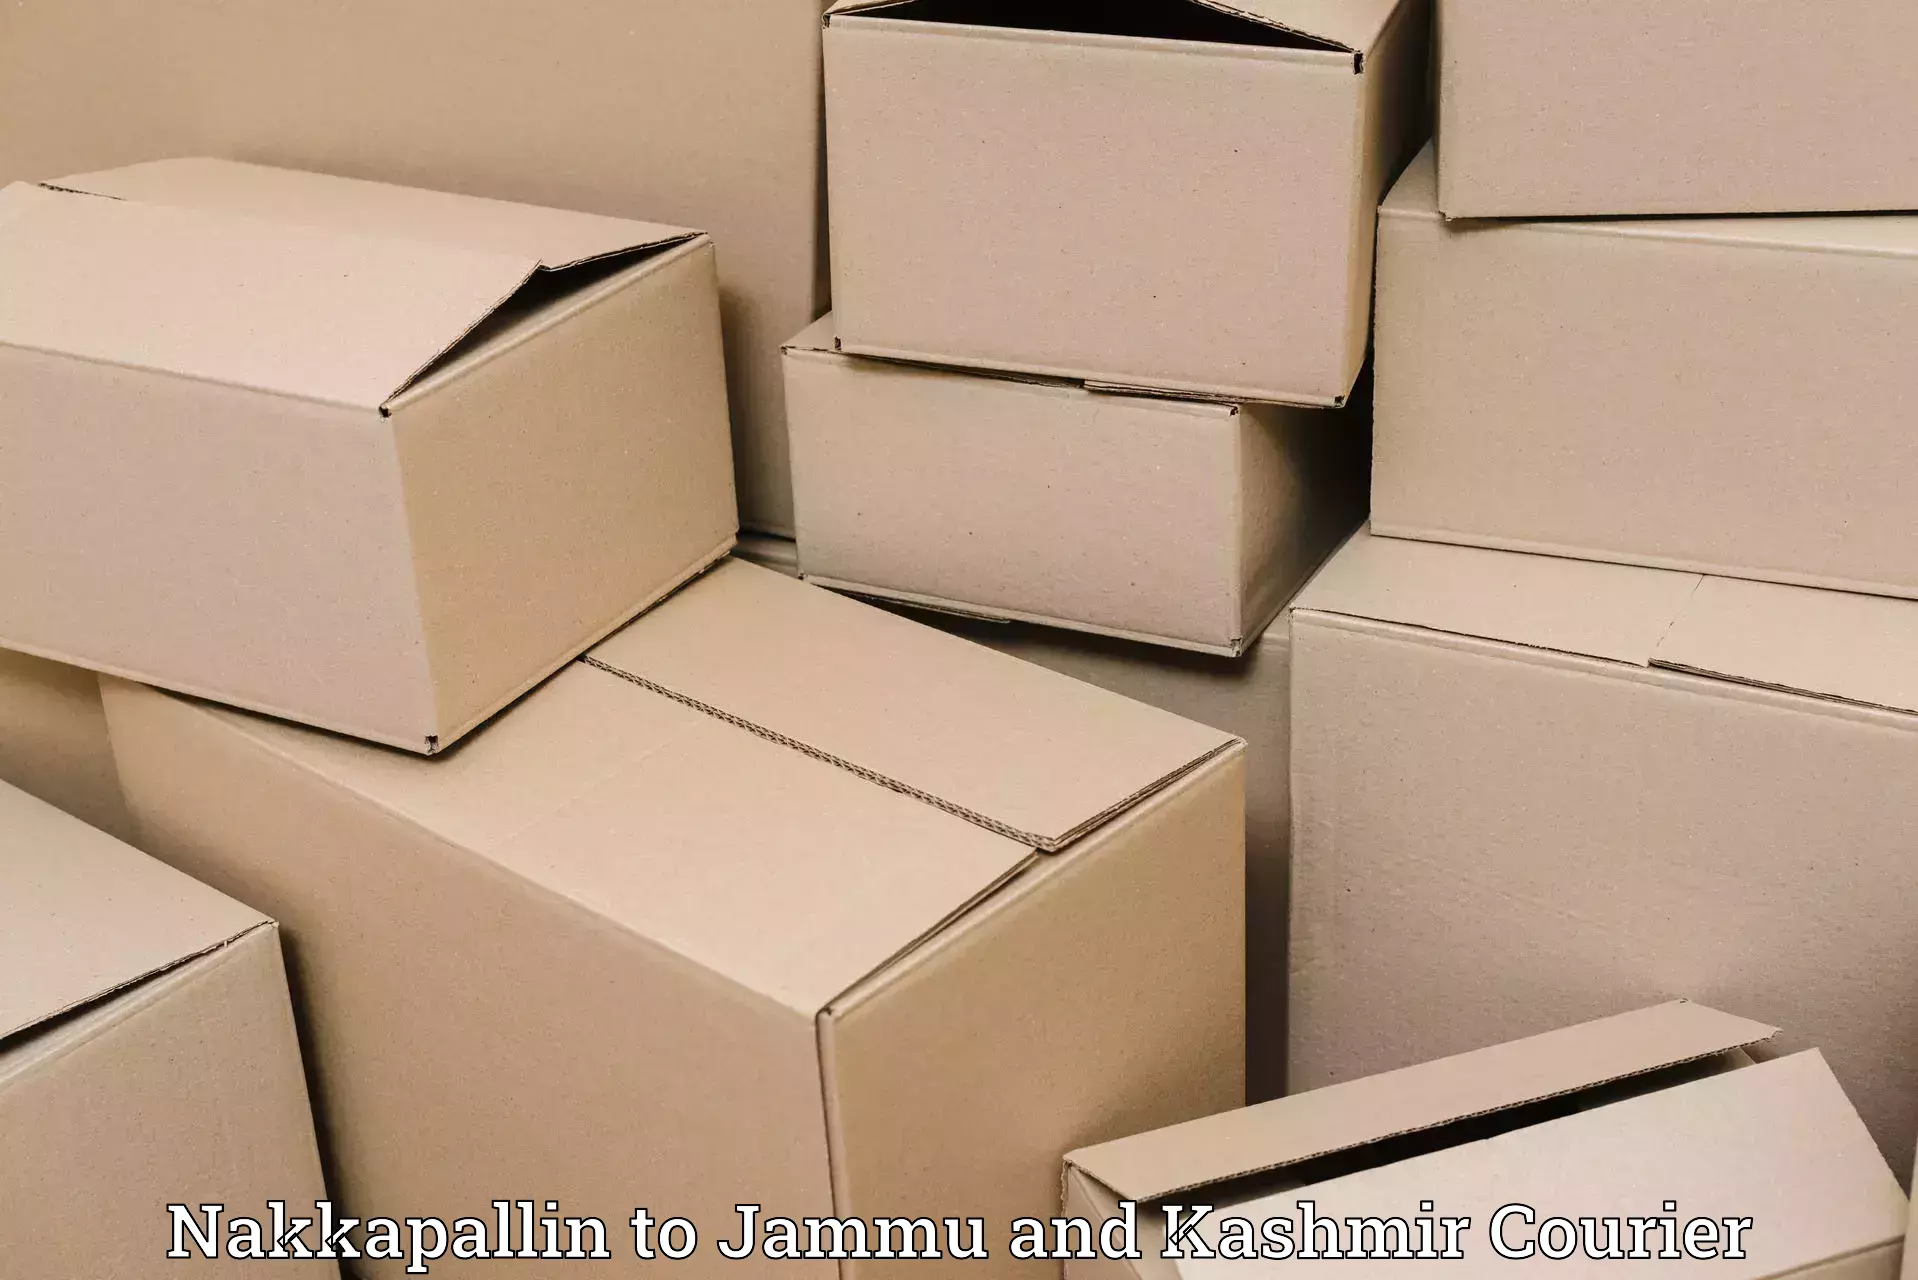 Pharmaceutical courier Nakkapallin to Reasi